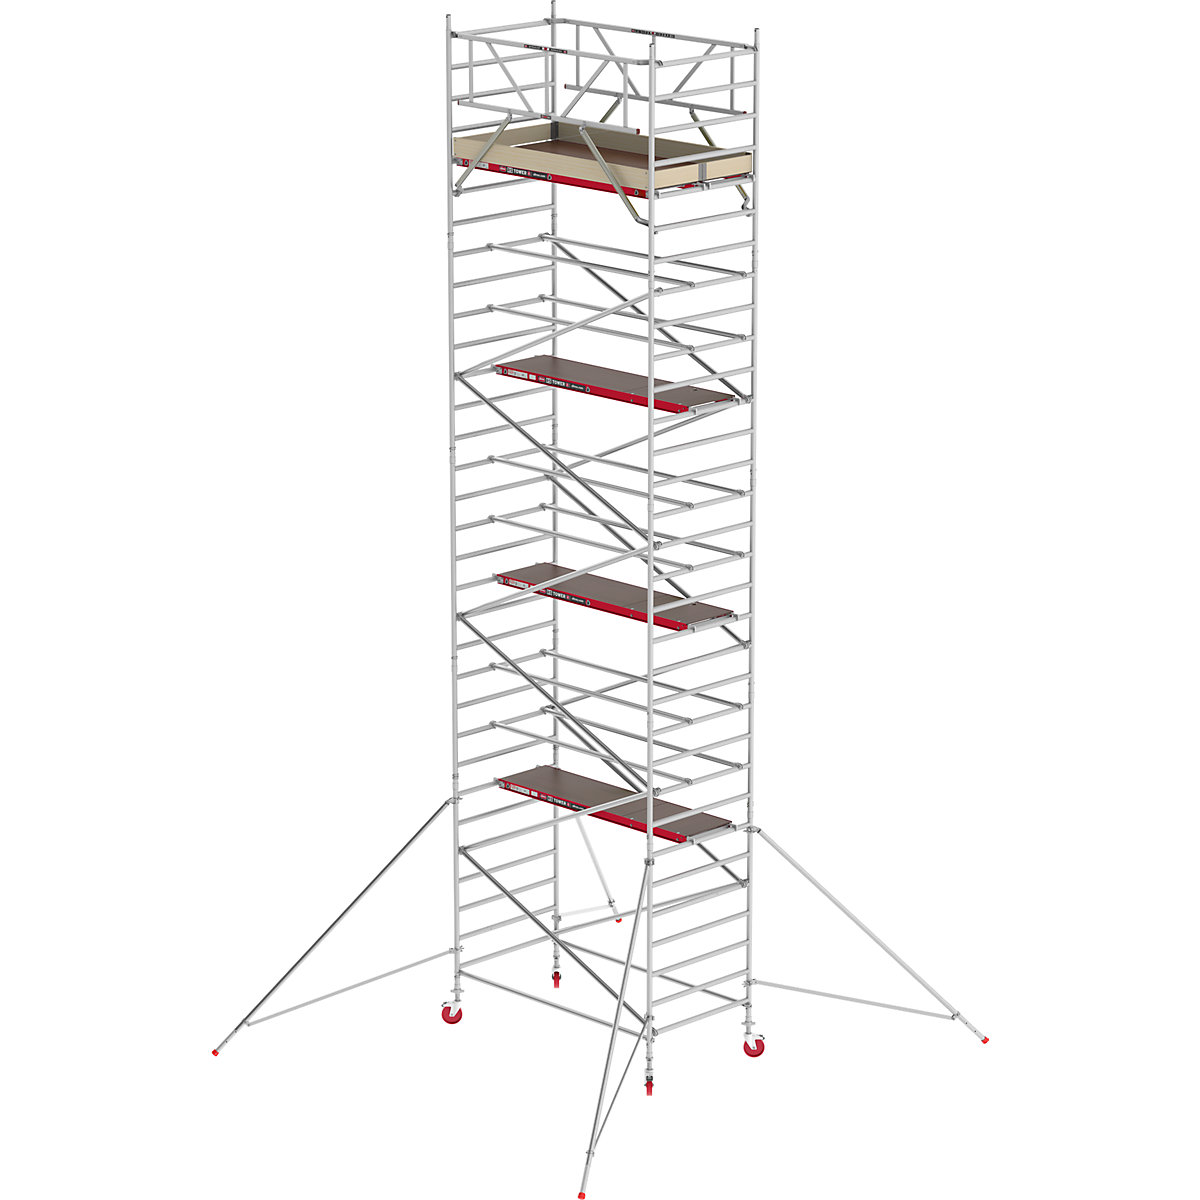 Pomičen oder RS TOWER 42, širok – Altrex, lesena ploščad, dolžina 1,85 m, delovna višina 10,20 m